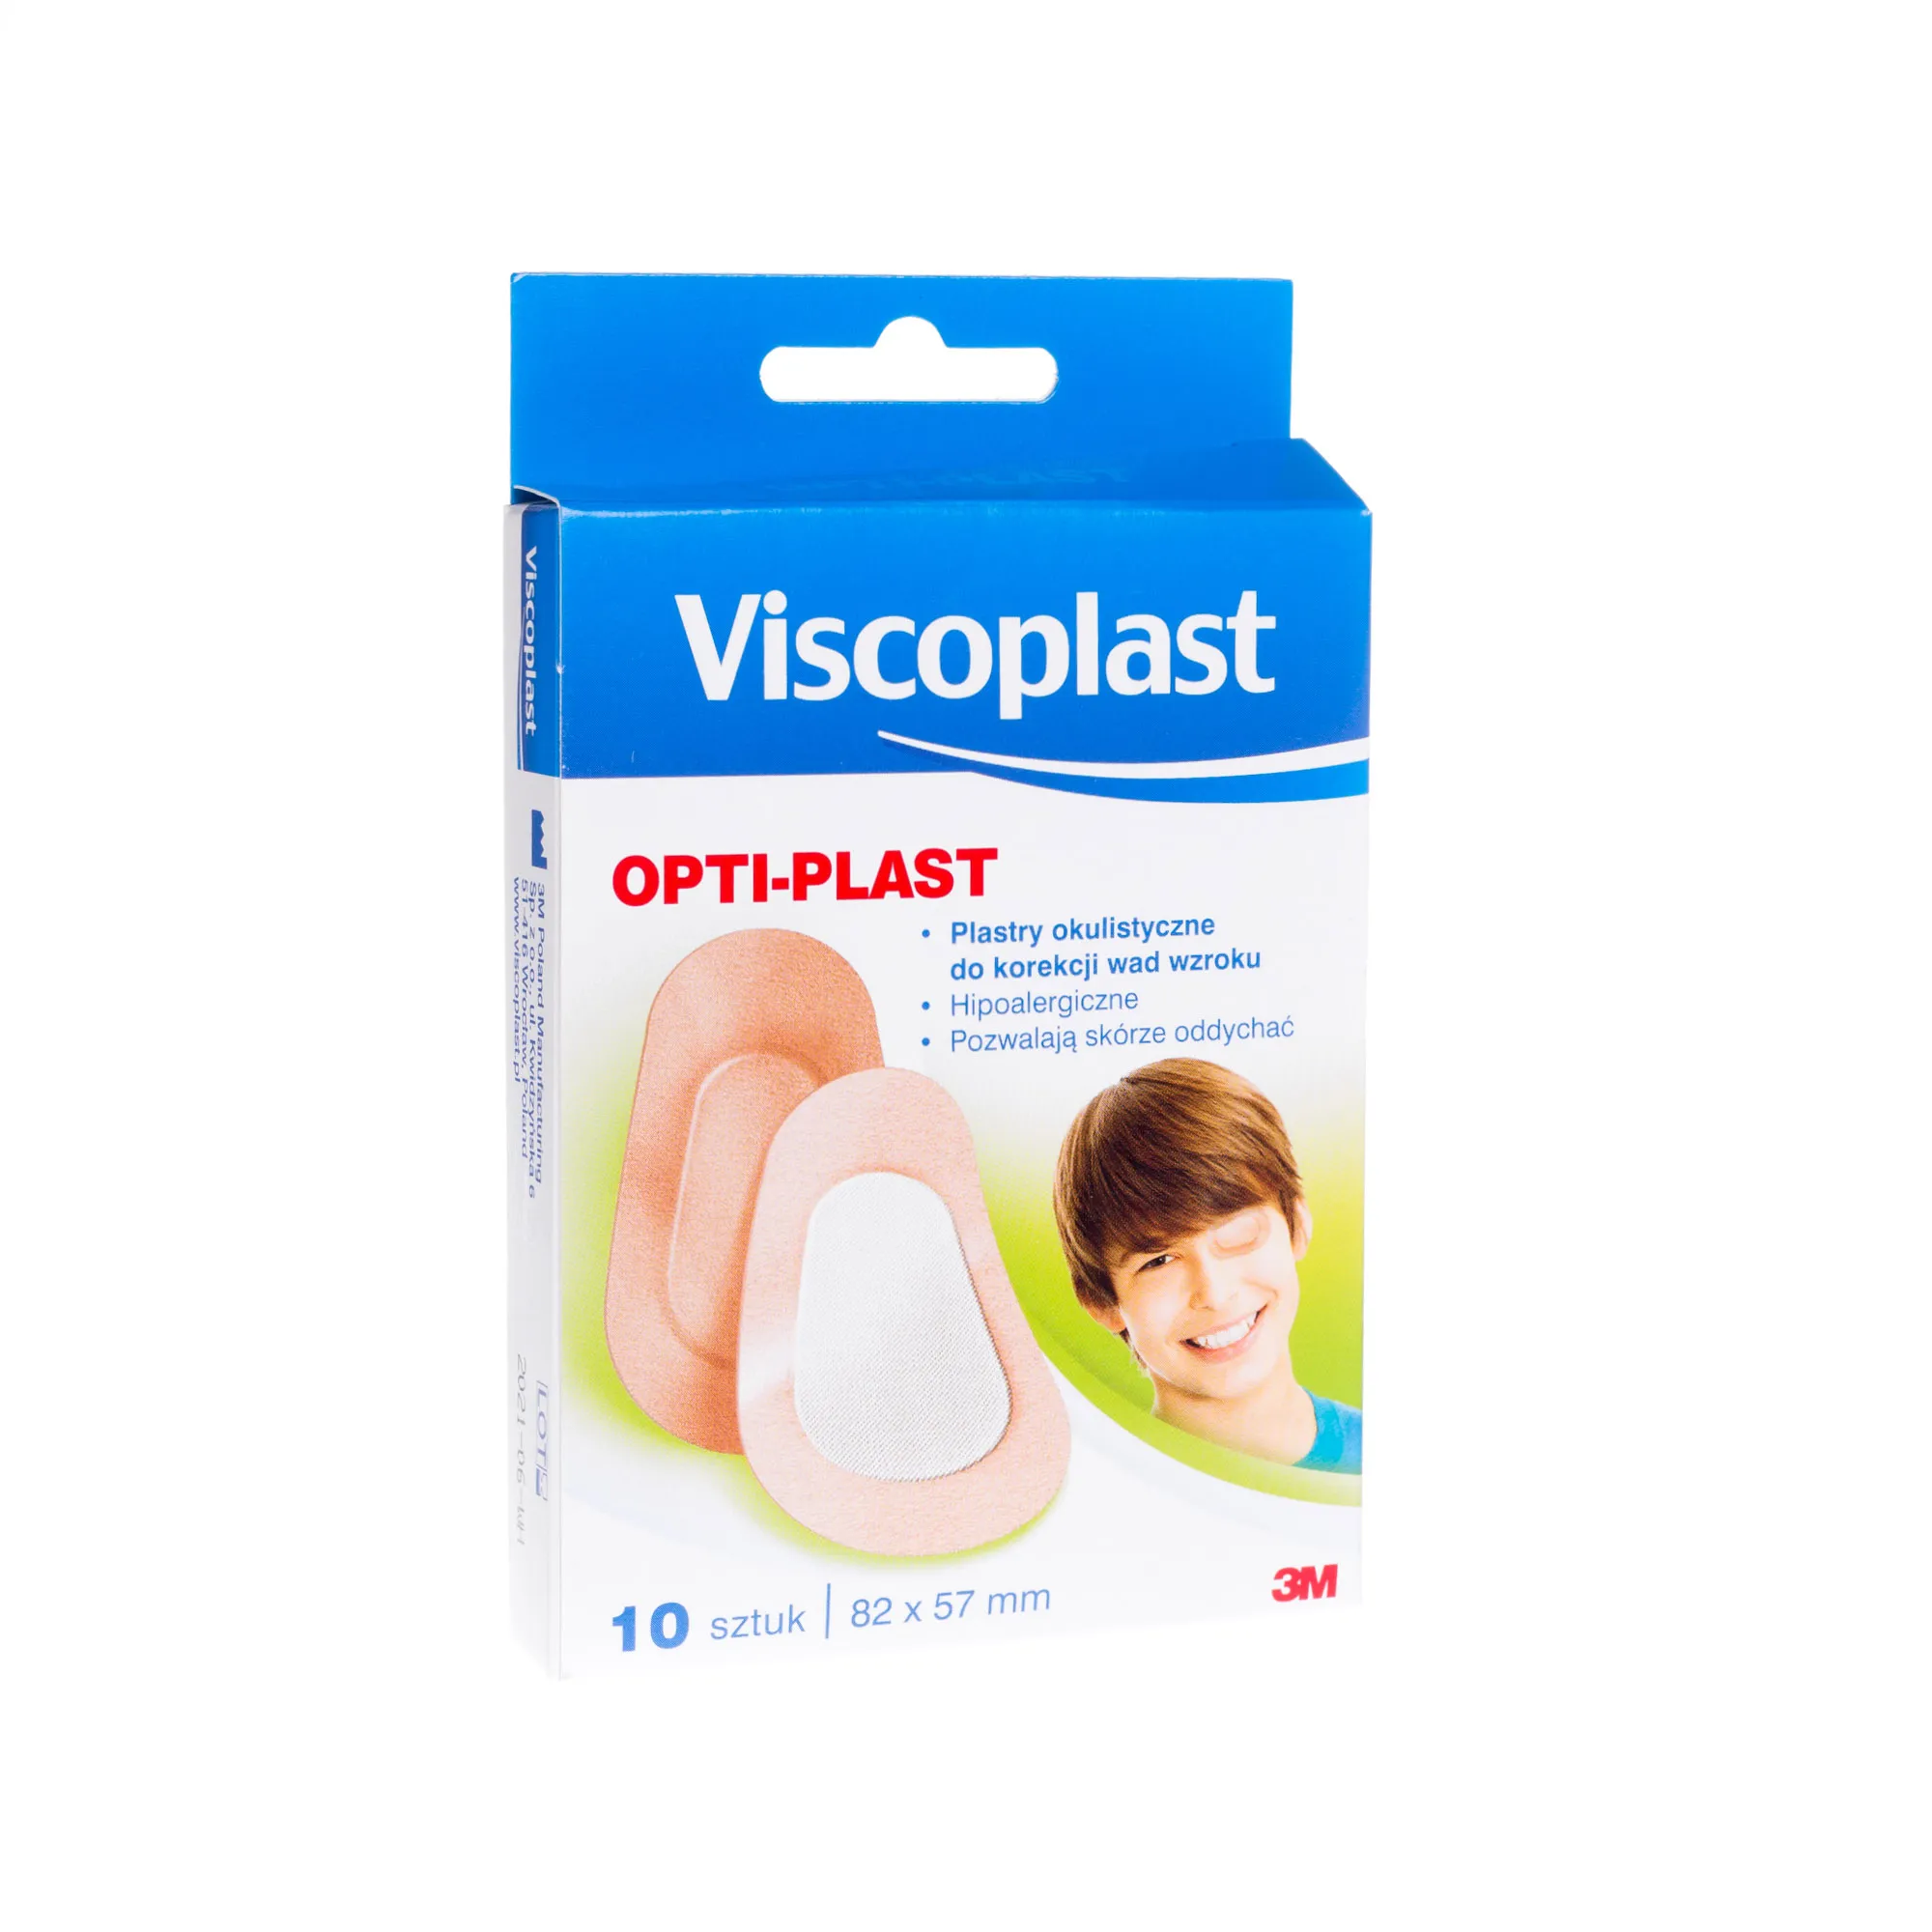 Viscoplast OPTI PLAST, plastry okulistyczne do korekcji wad wzroku, 10 sztuk, 82 x 57 mm